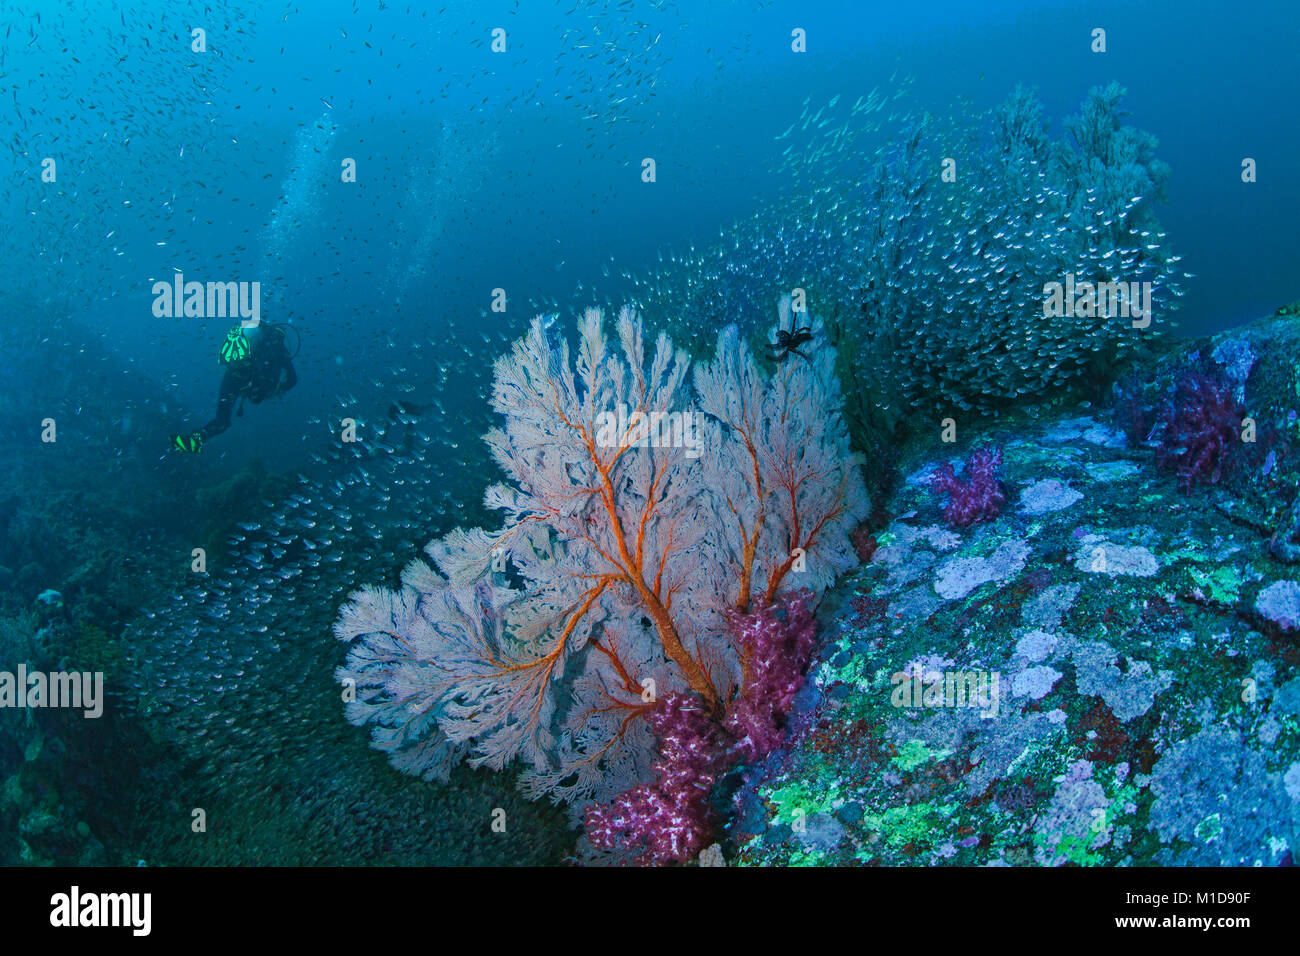 Marine von bunten Korallenriff mit seafan mit Halo von glassfish und weichen Korallen umgeben, Scuba Diver in blue water Hintergrund. Richelieu Rock in t Stockfoto